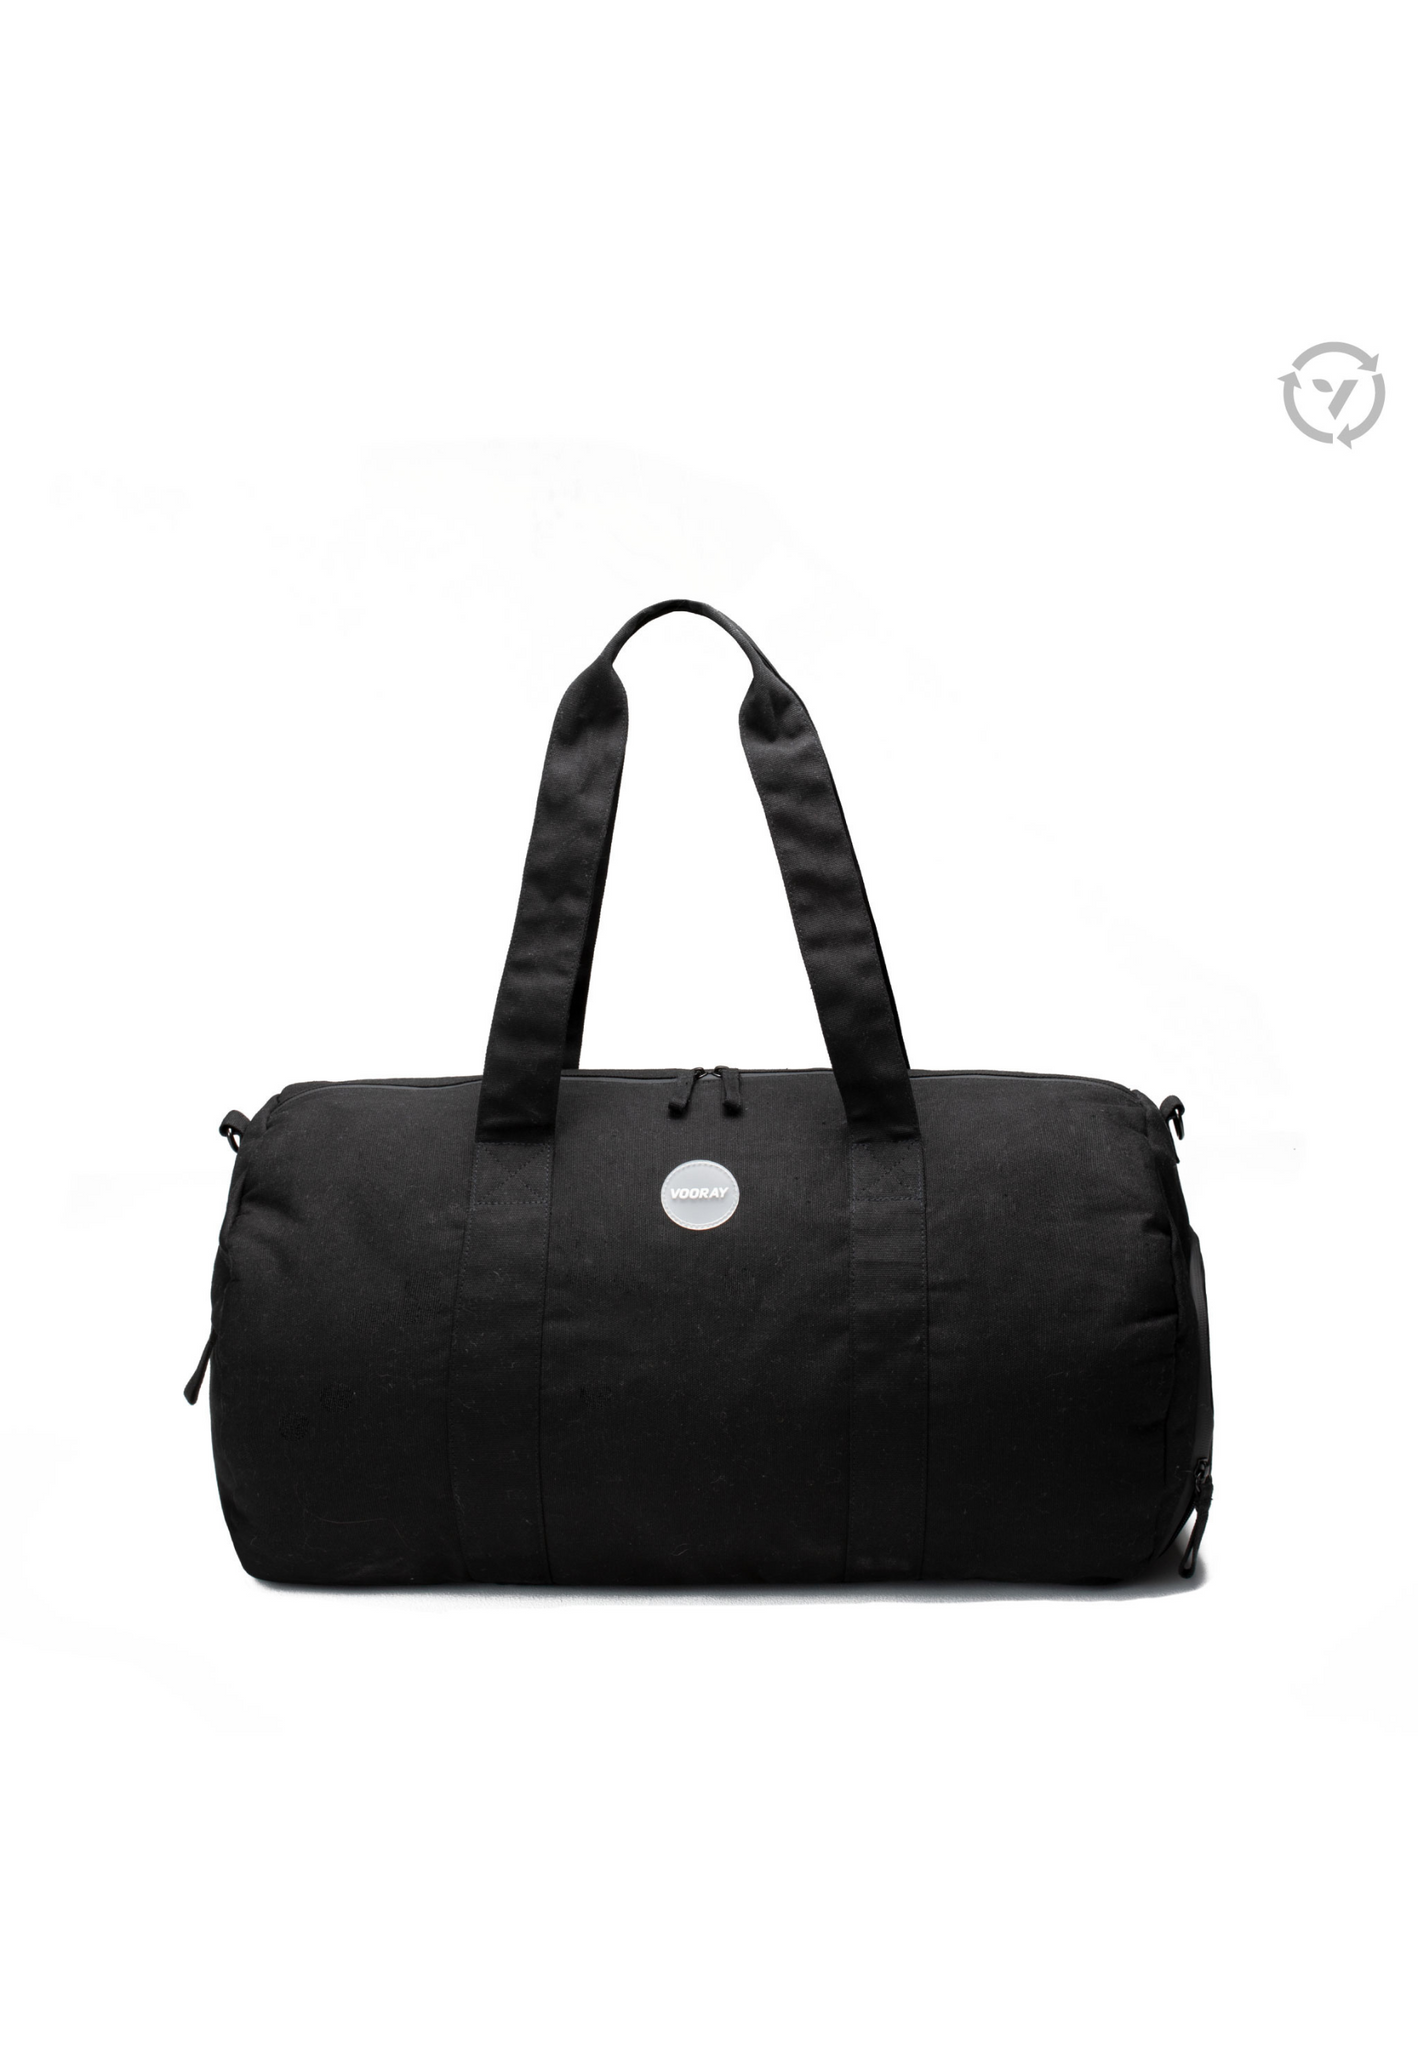 Vooray Savanna Organic Duffel Obsidian - Le sac de voyage, le bagage à main et le sac de week-end indispensables 